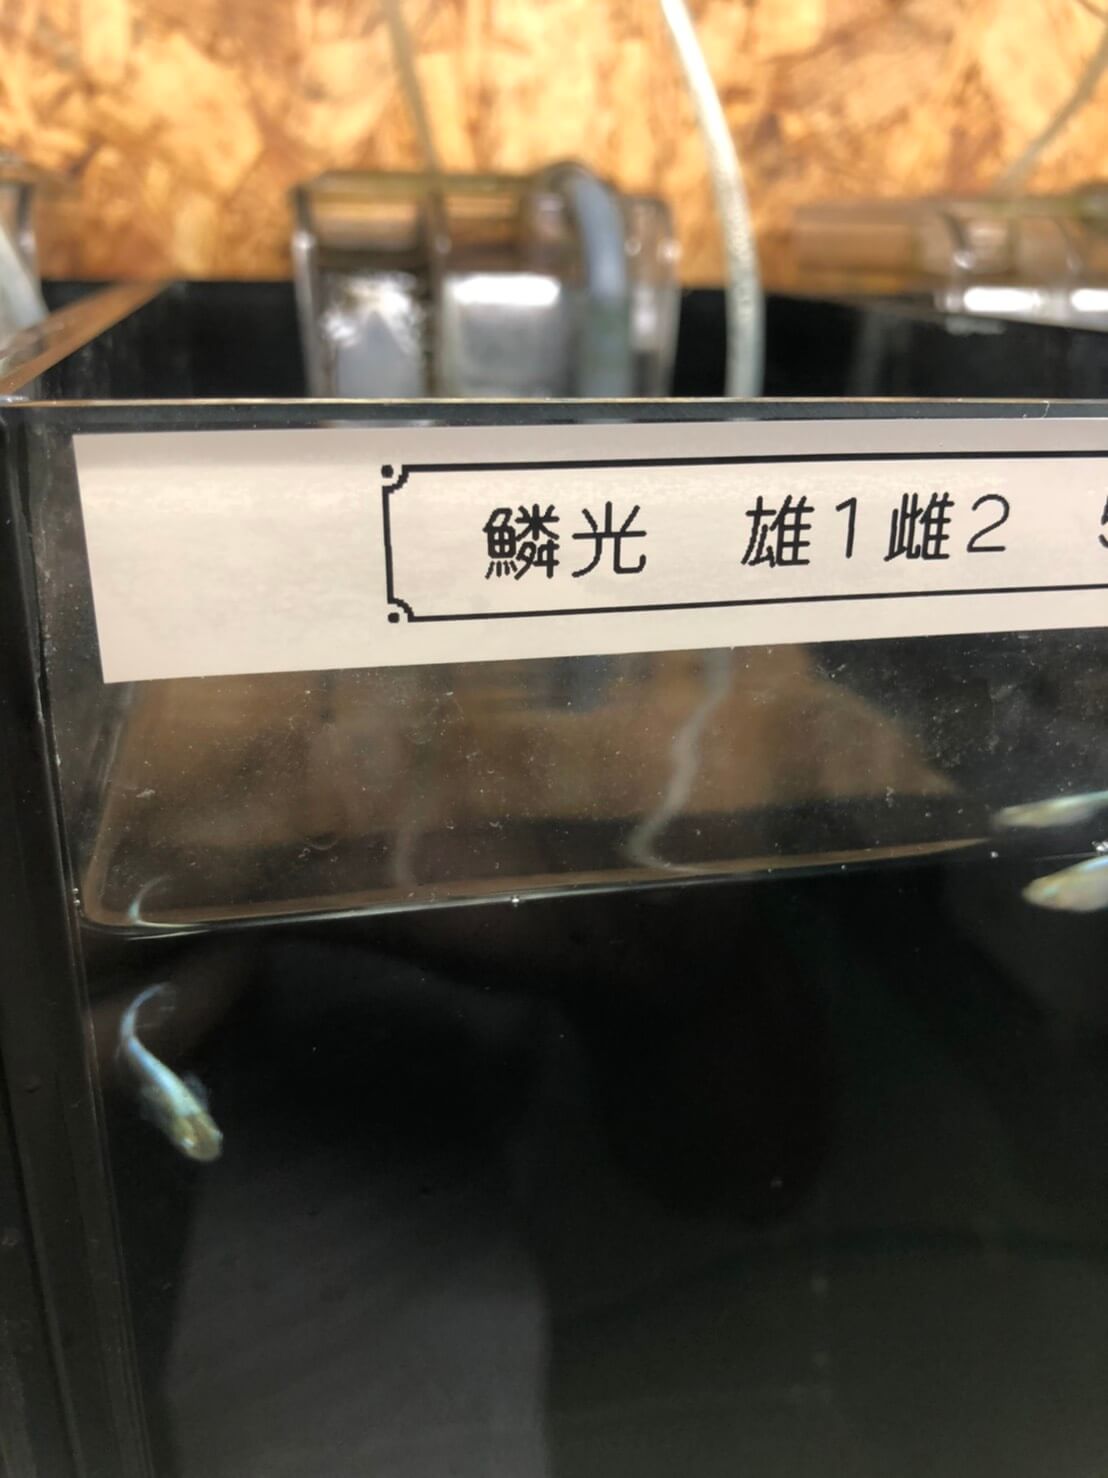 めだか屋BIO-LABO(バイオラボ)奈良県大和高田市のメダカ屋で販売されてるメダカ